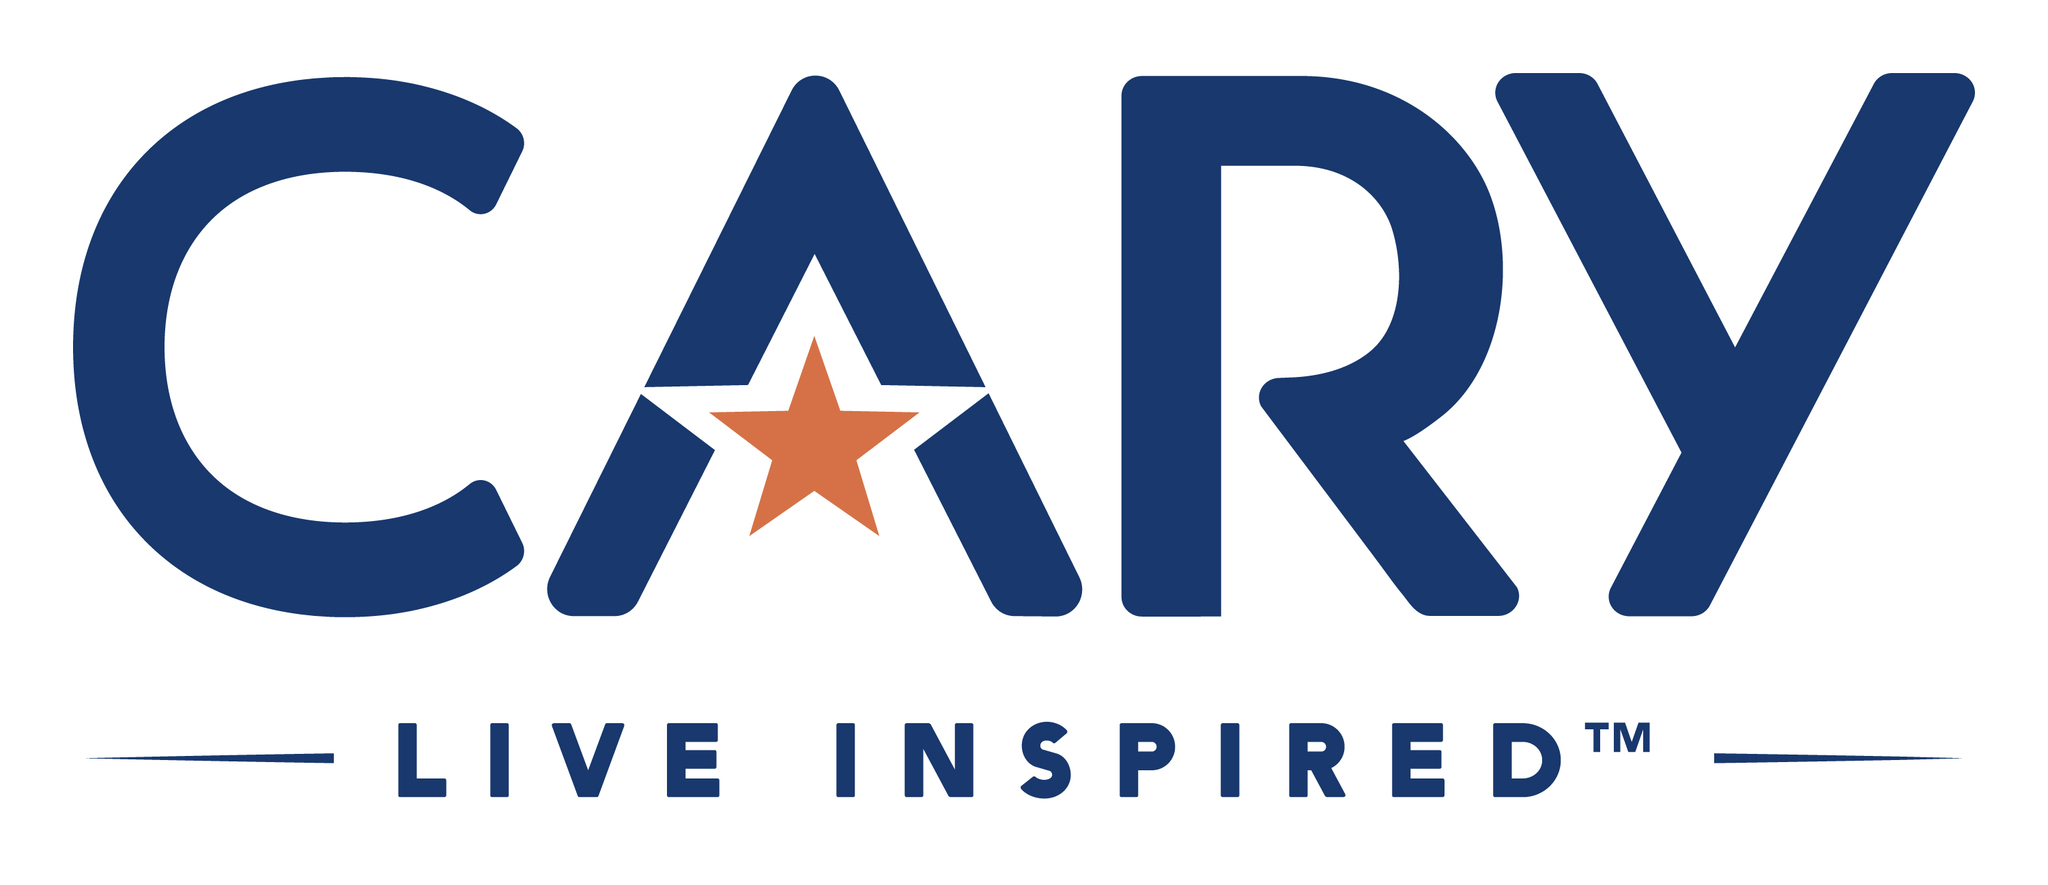 Cary logo